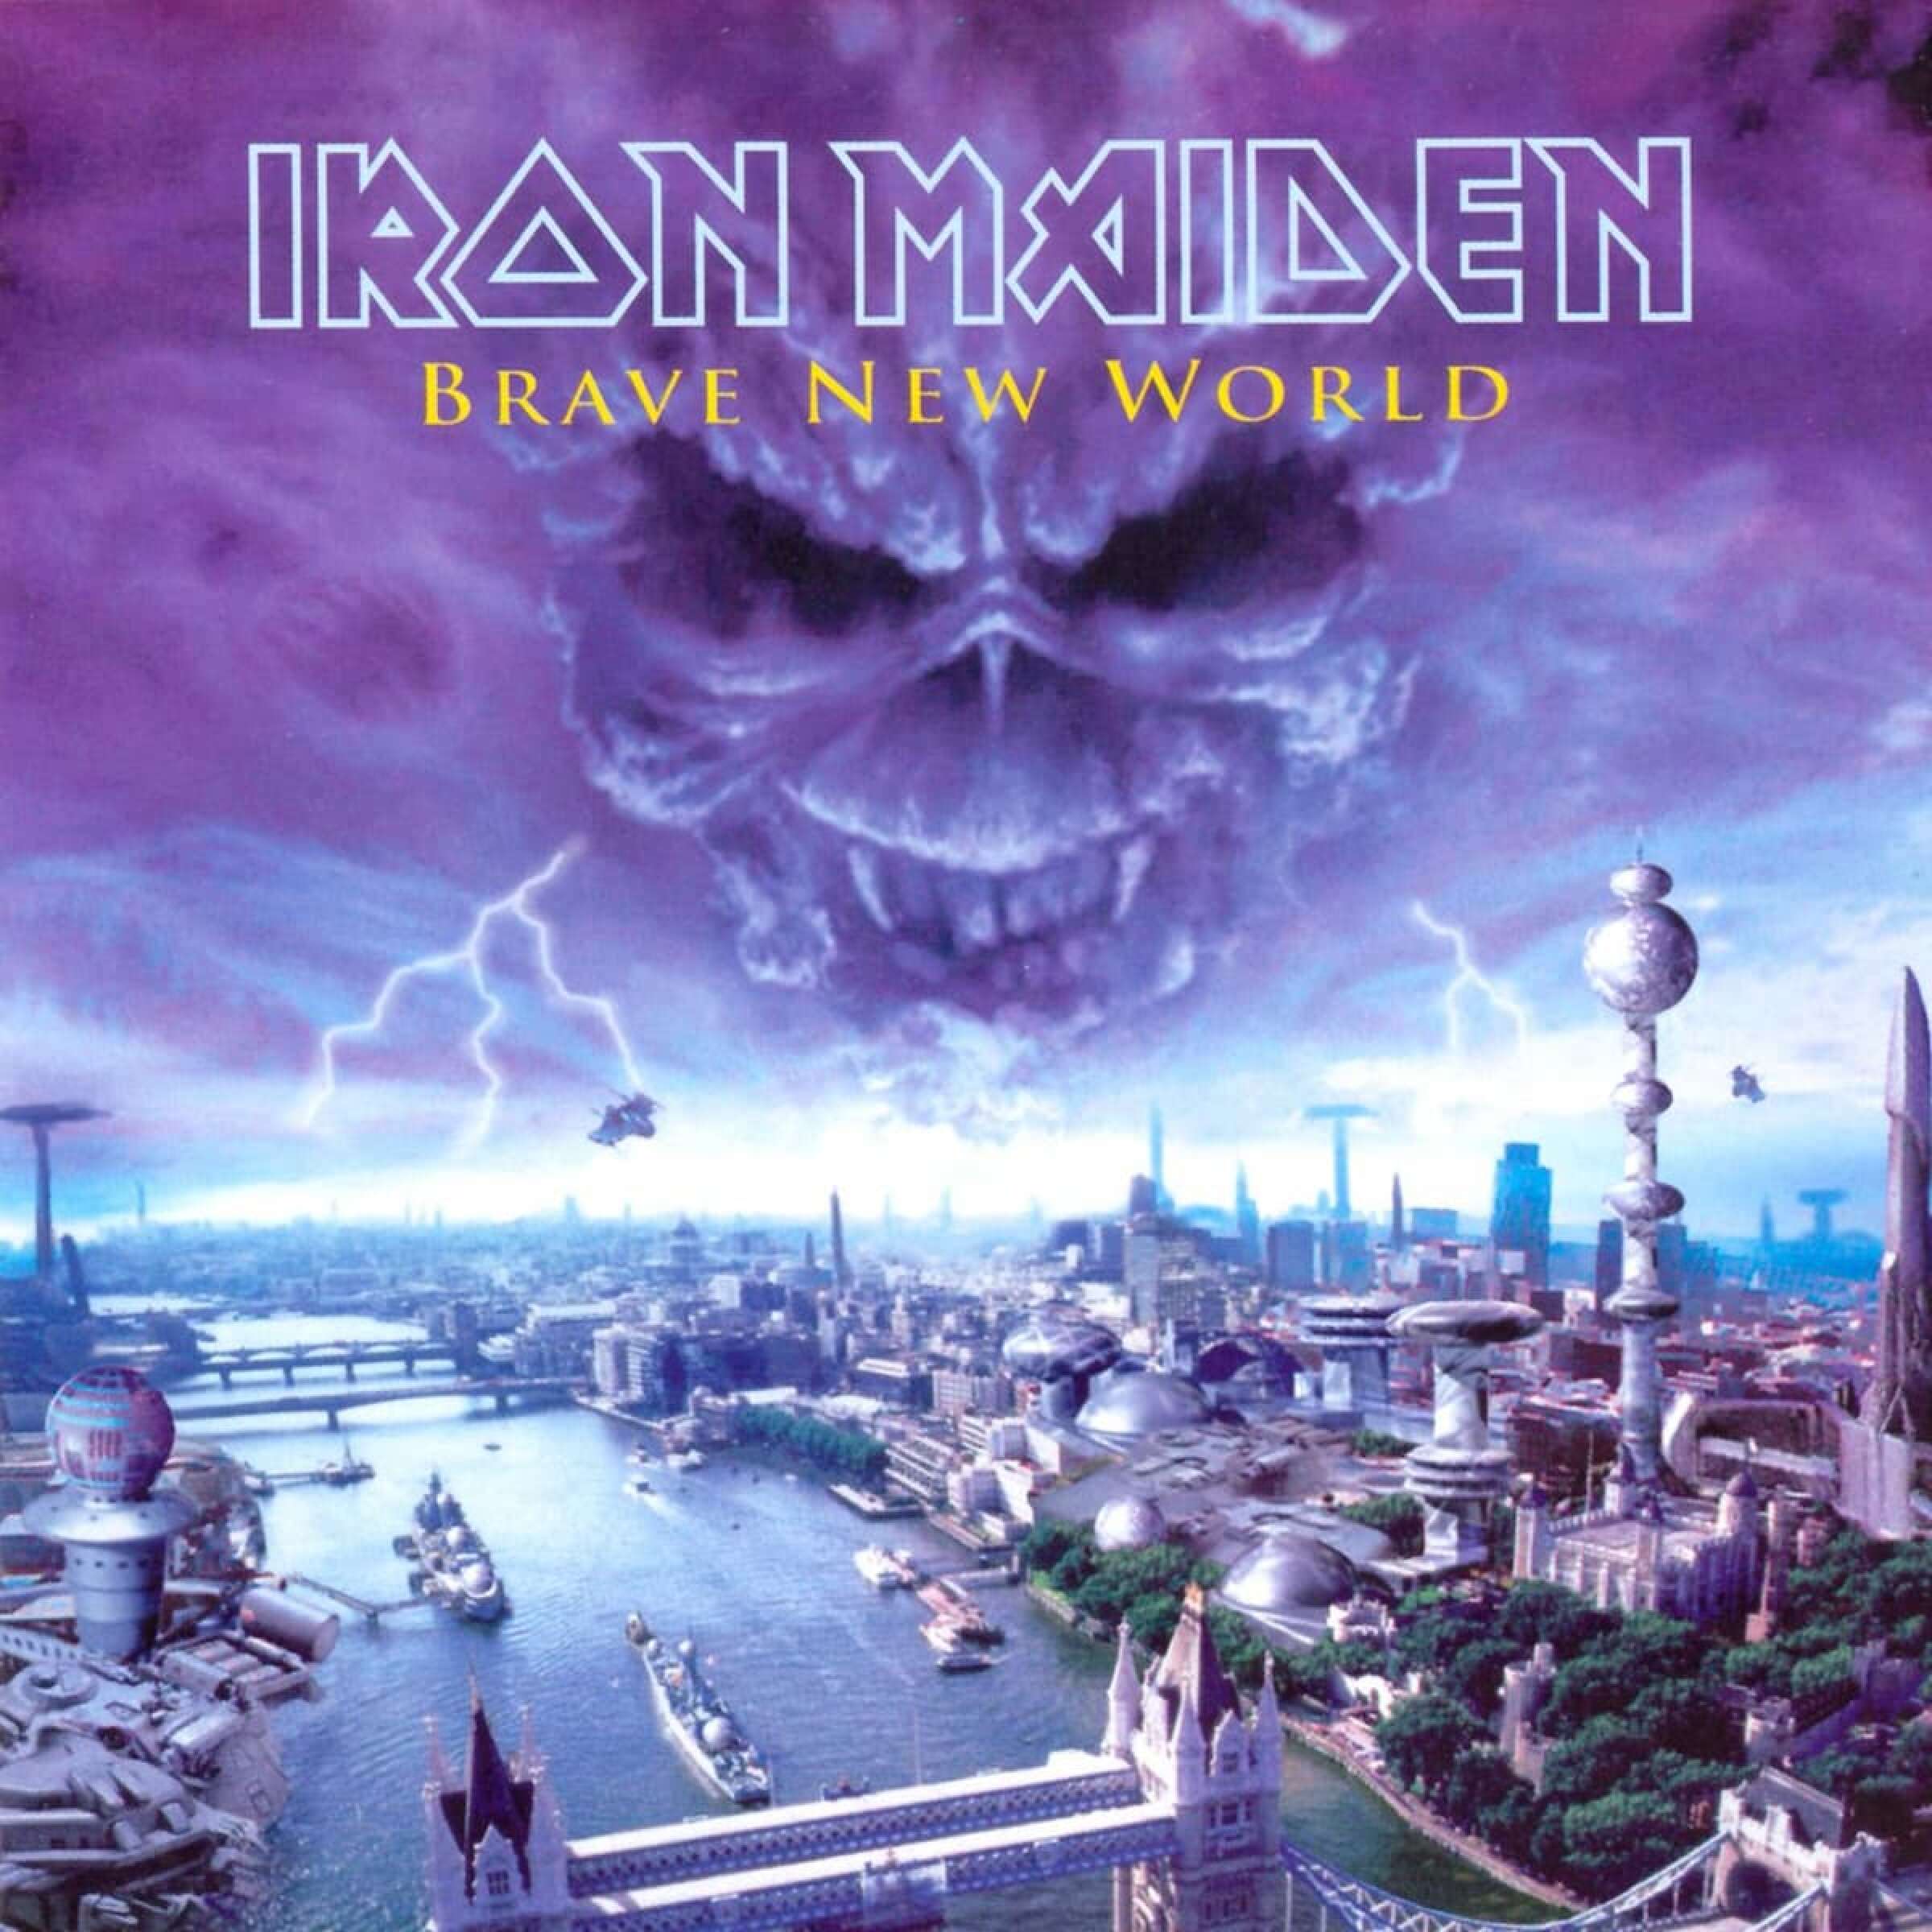 Iron Maiden Album (Brave New World)